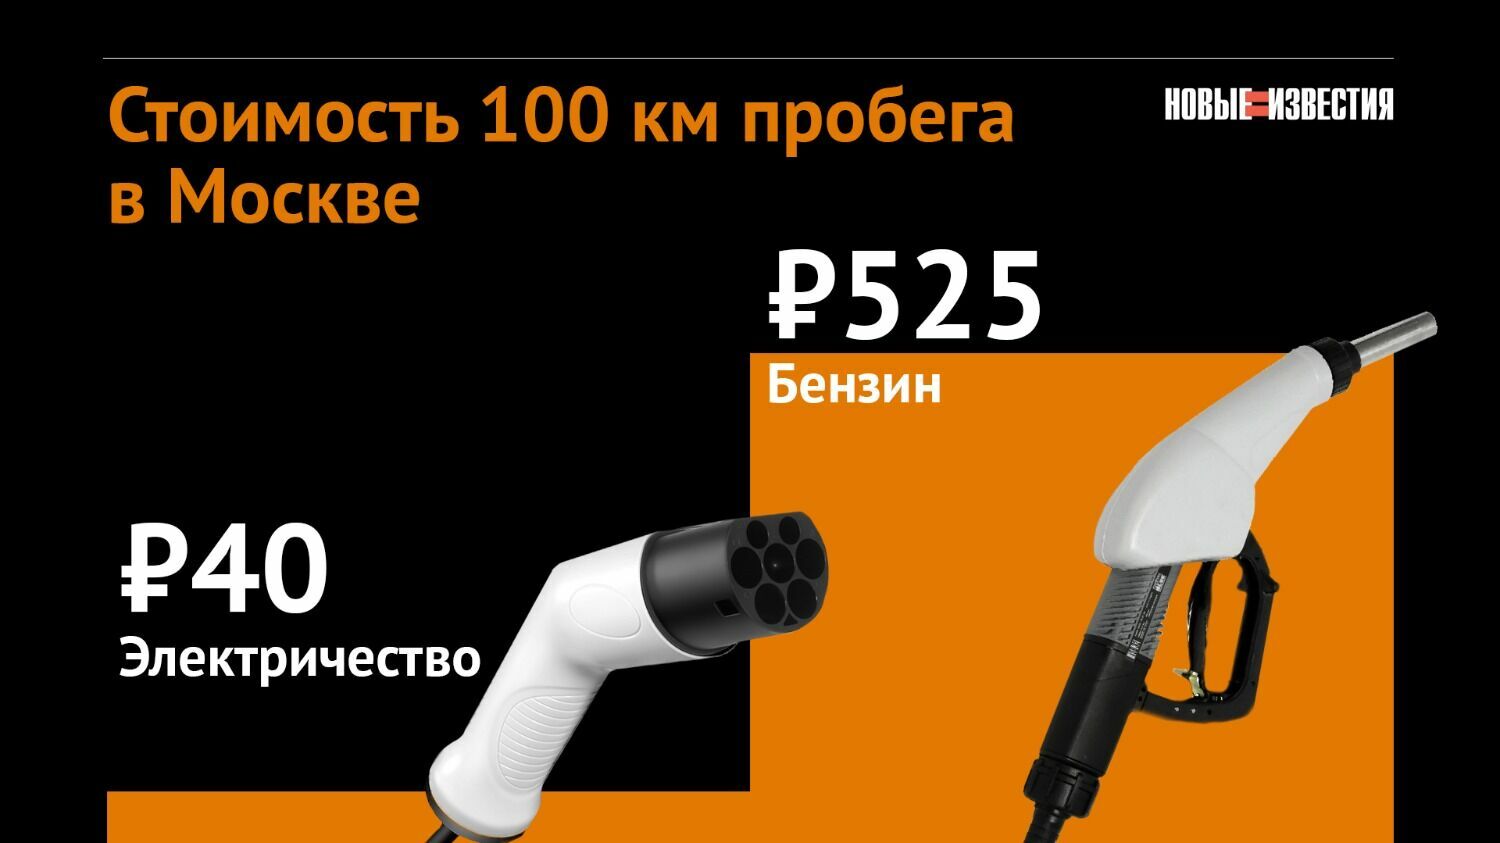 Стоимость 100 км пробега в Москве